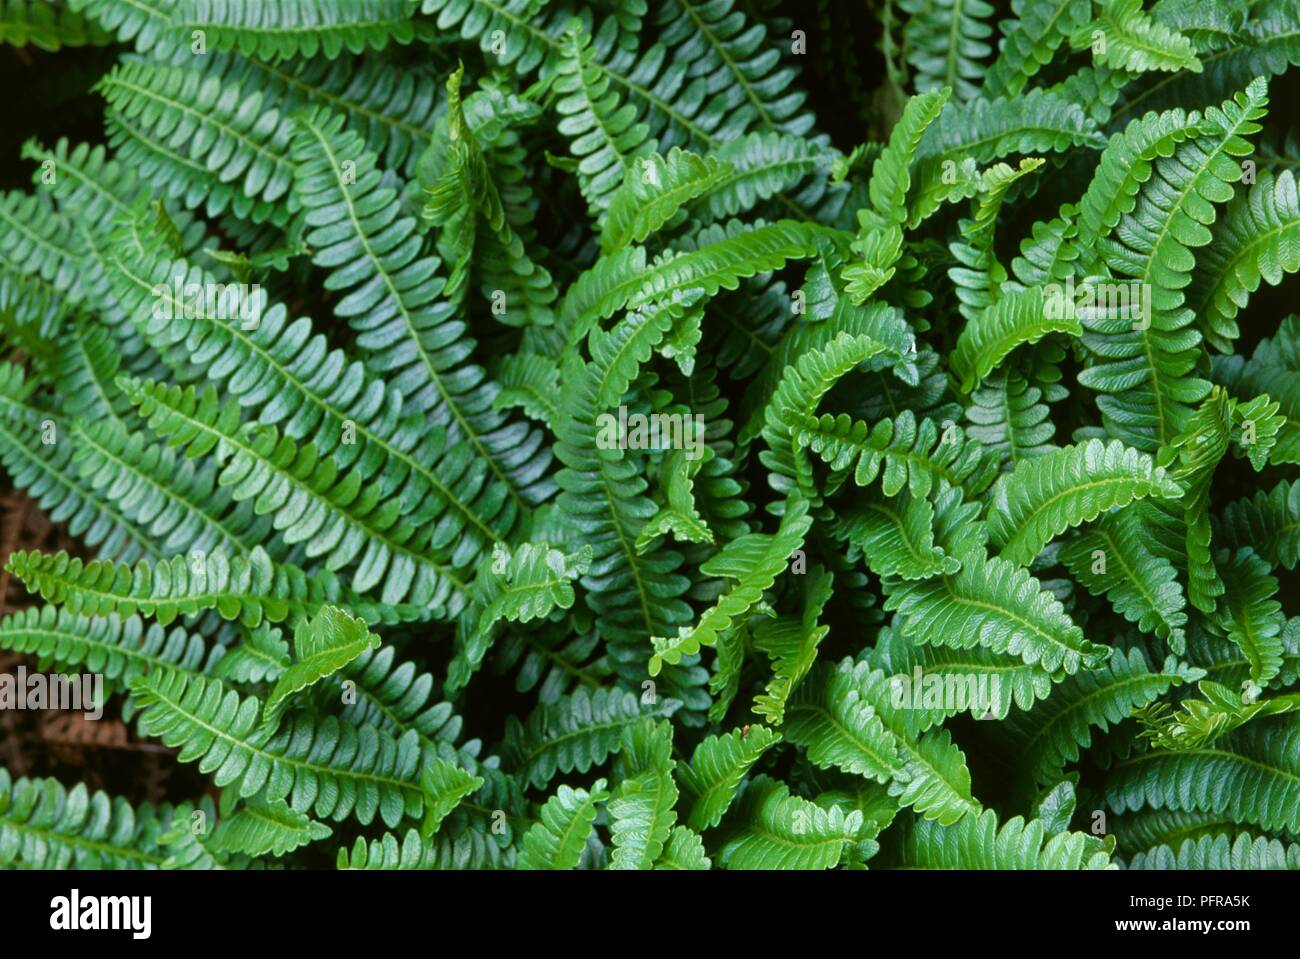 Blechnum penna-marina, an evergreen perennial fern with glossy green pinnate fronds Stock Photo